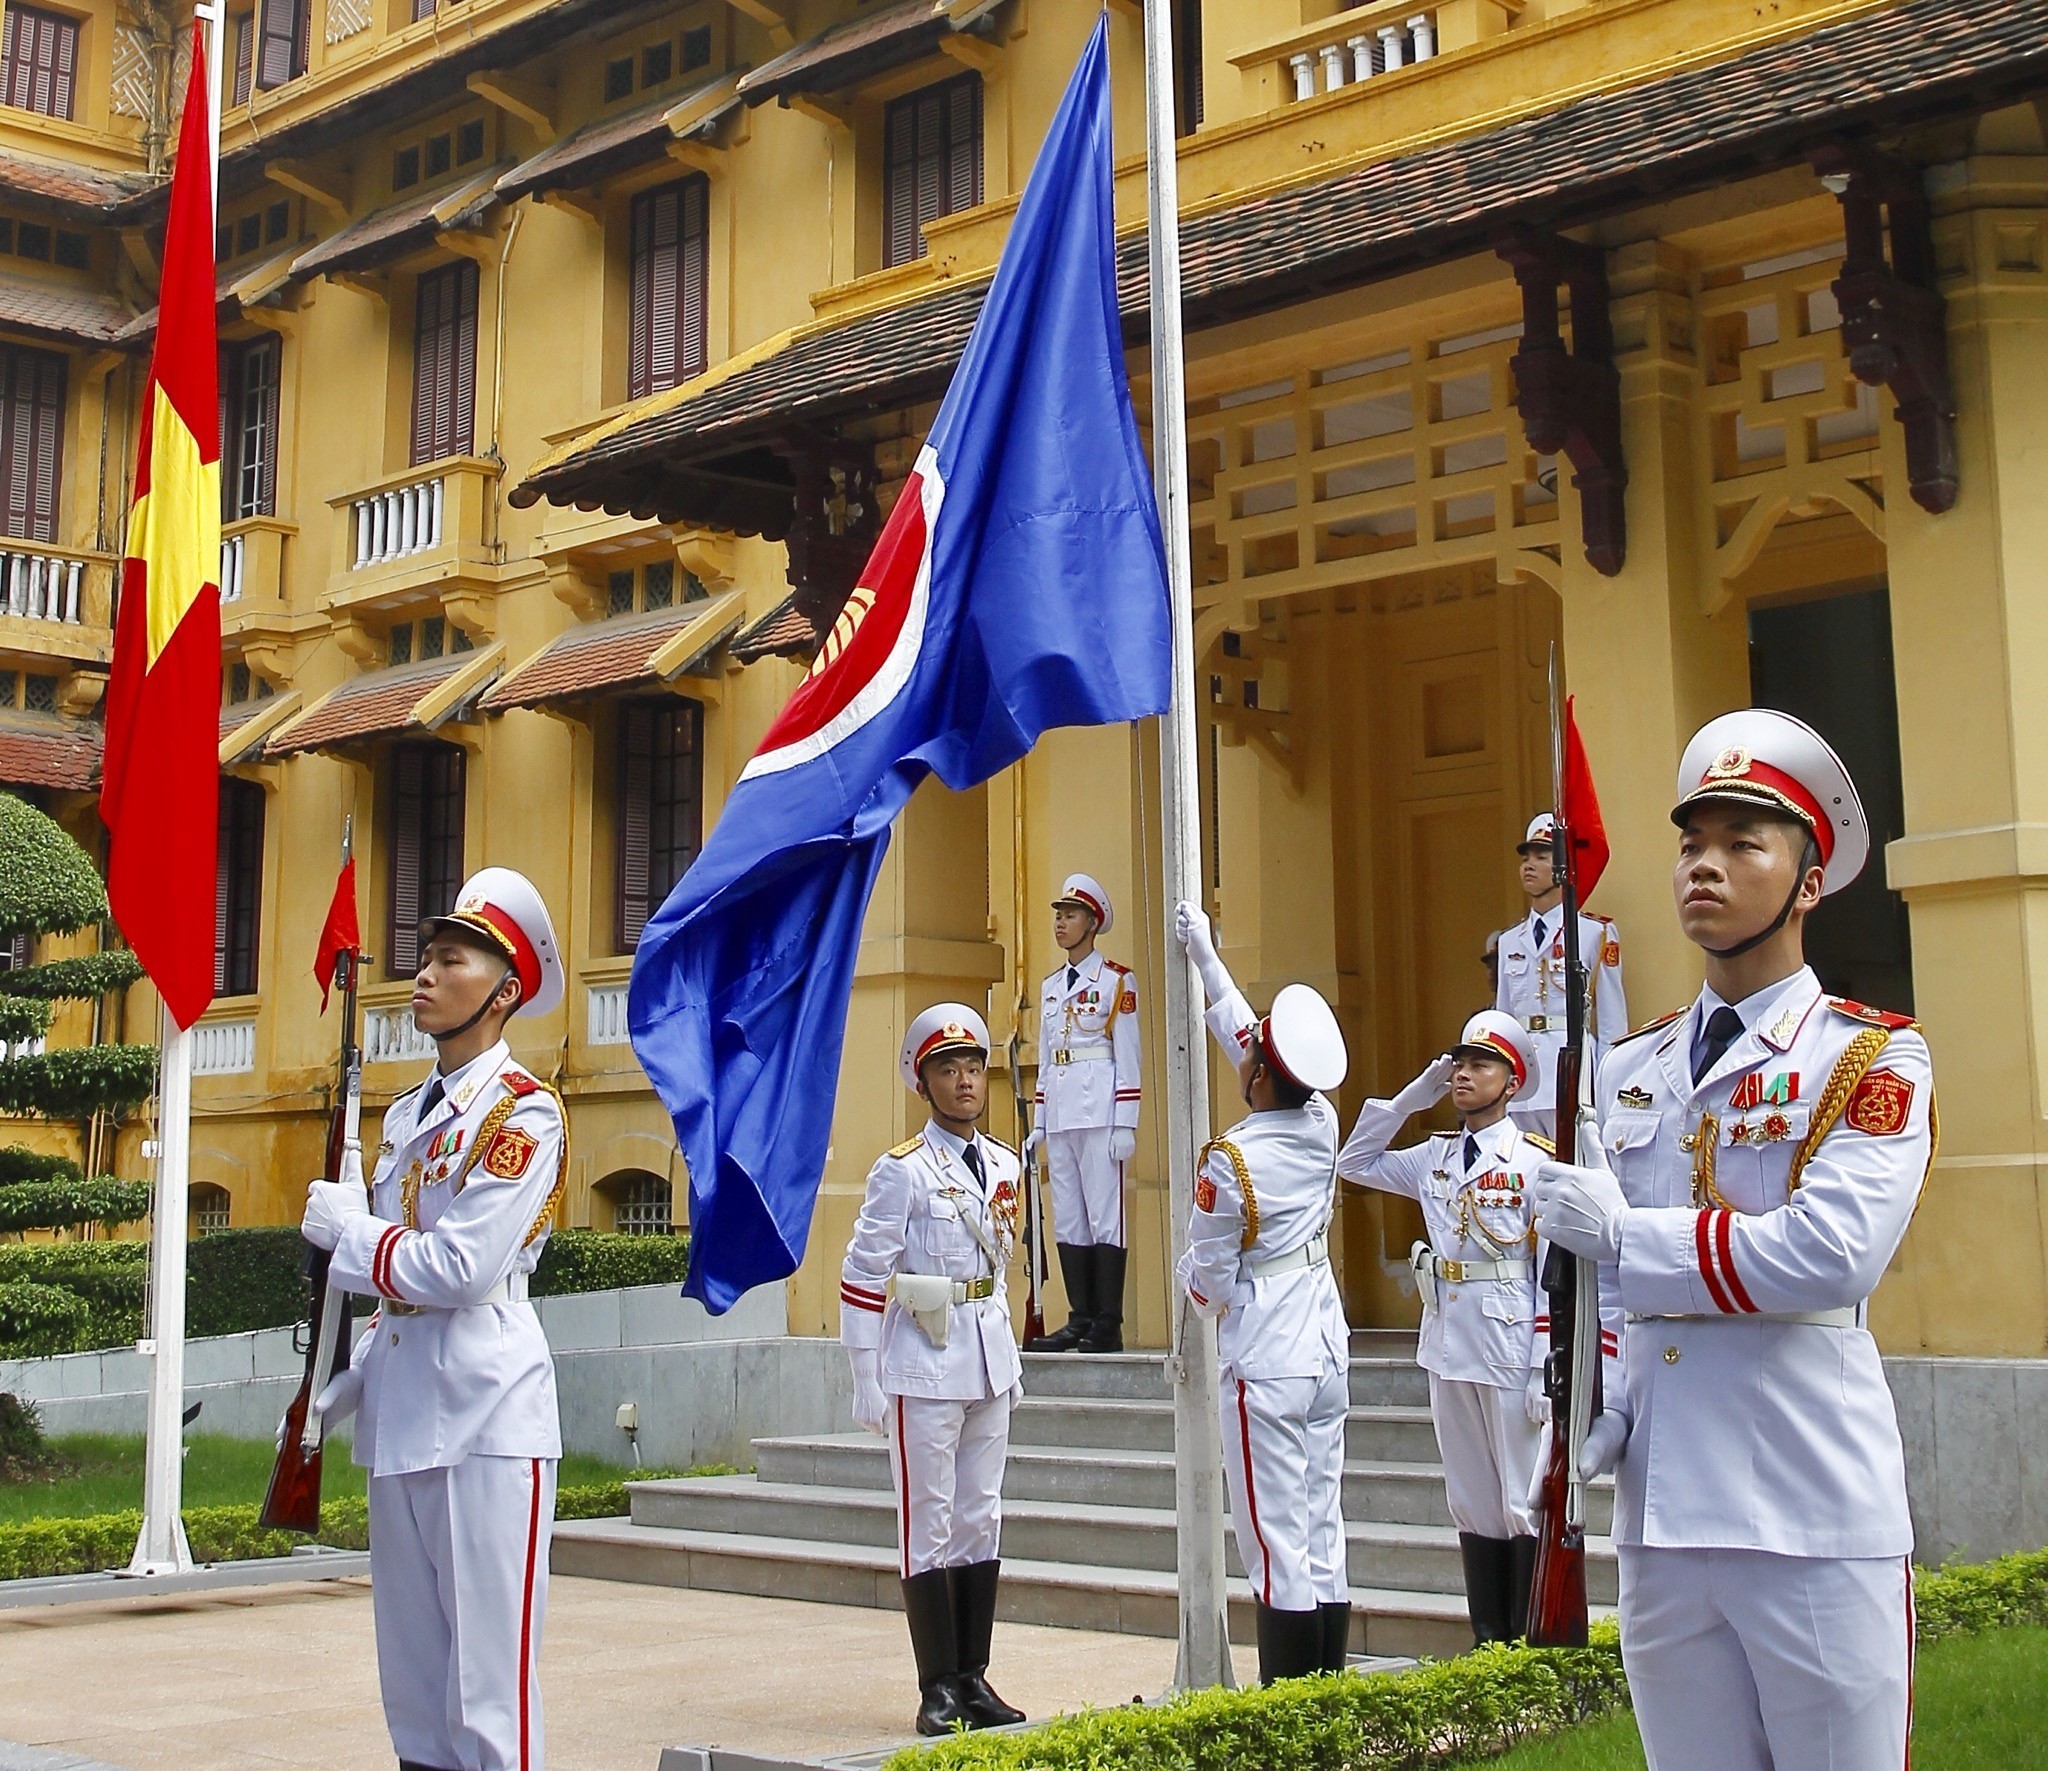 Nghi thức thượng cờ ASEAN tại Trụ sở Bộ Ngoại giao nhân kỷ niệm 51 năm thành lập ASEAN (8/8/1967-8/8/2018). (Ảnh: Lâm Khánh/TTXVN)